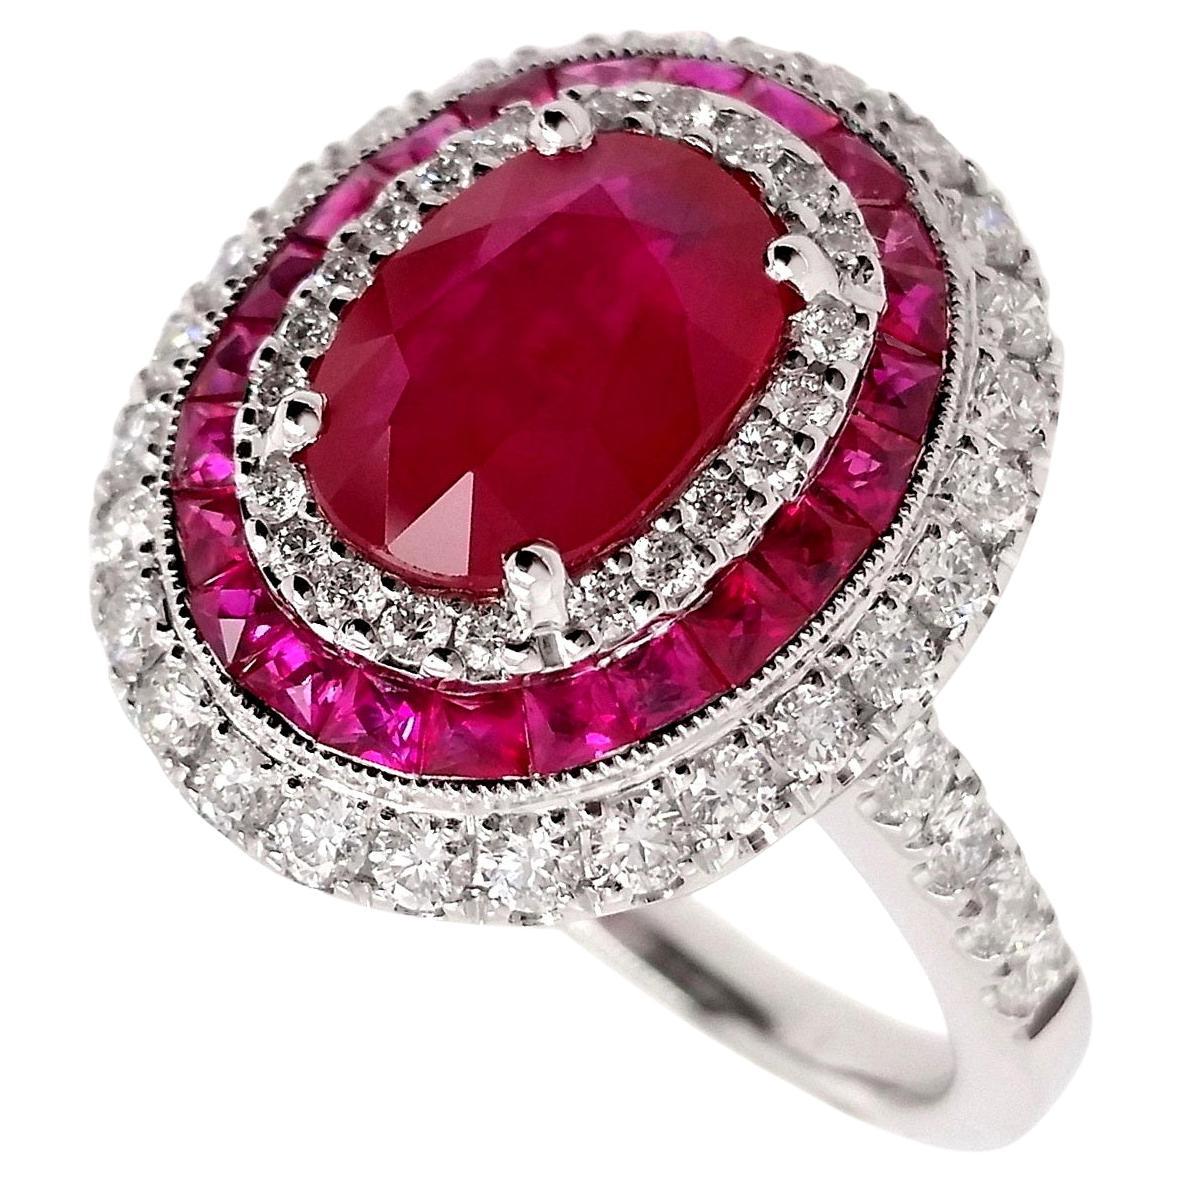 IGI-zertifizierter Ring aus 18 Karat Weißgold mit 319 Karat natürlichen Rubinen und 0,74 Karat Diamanten